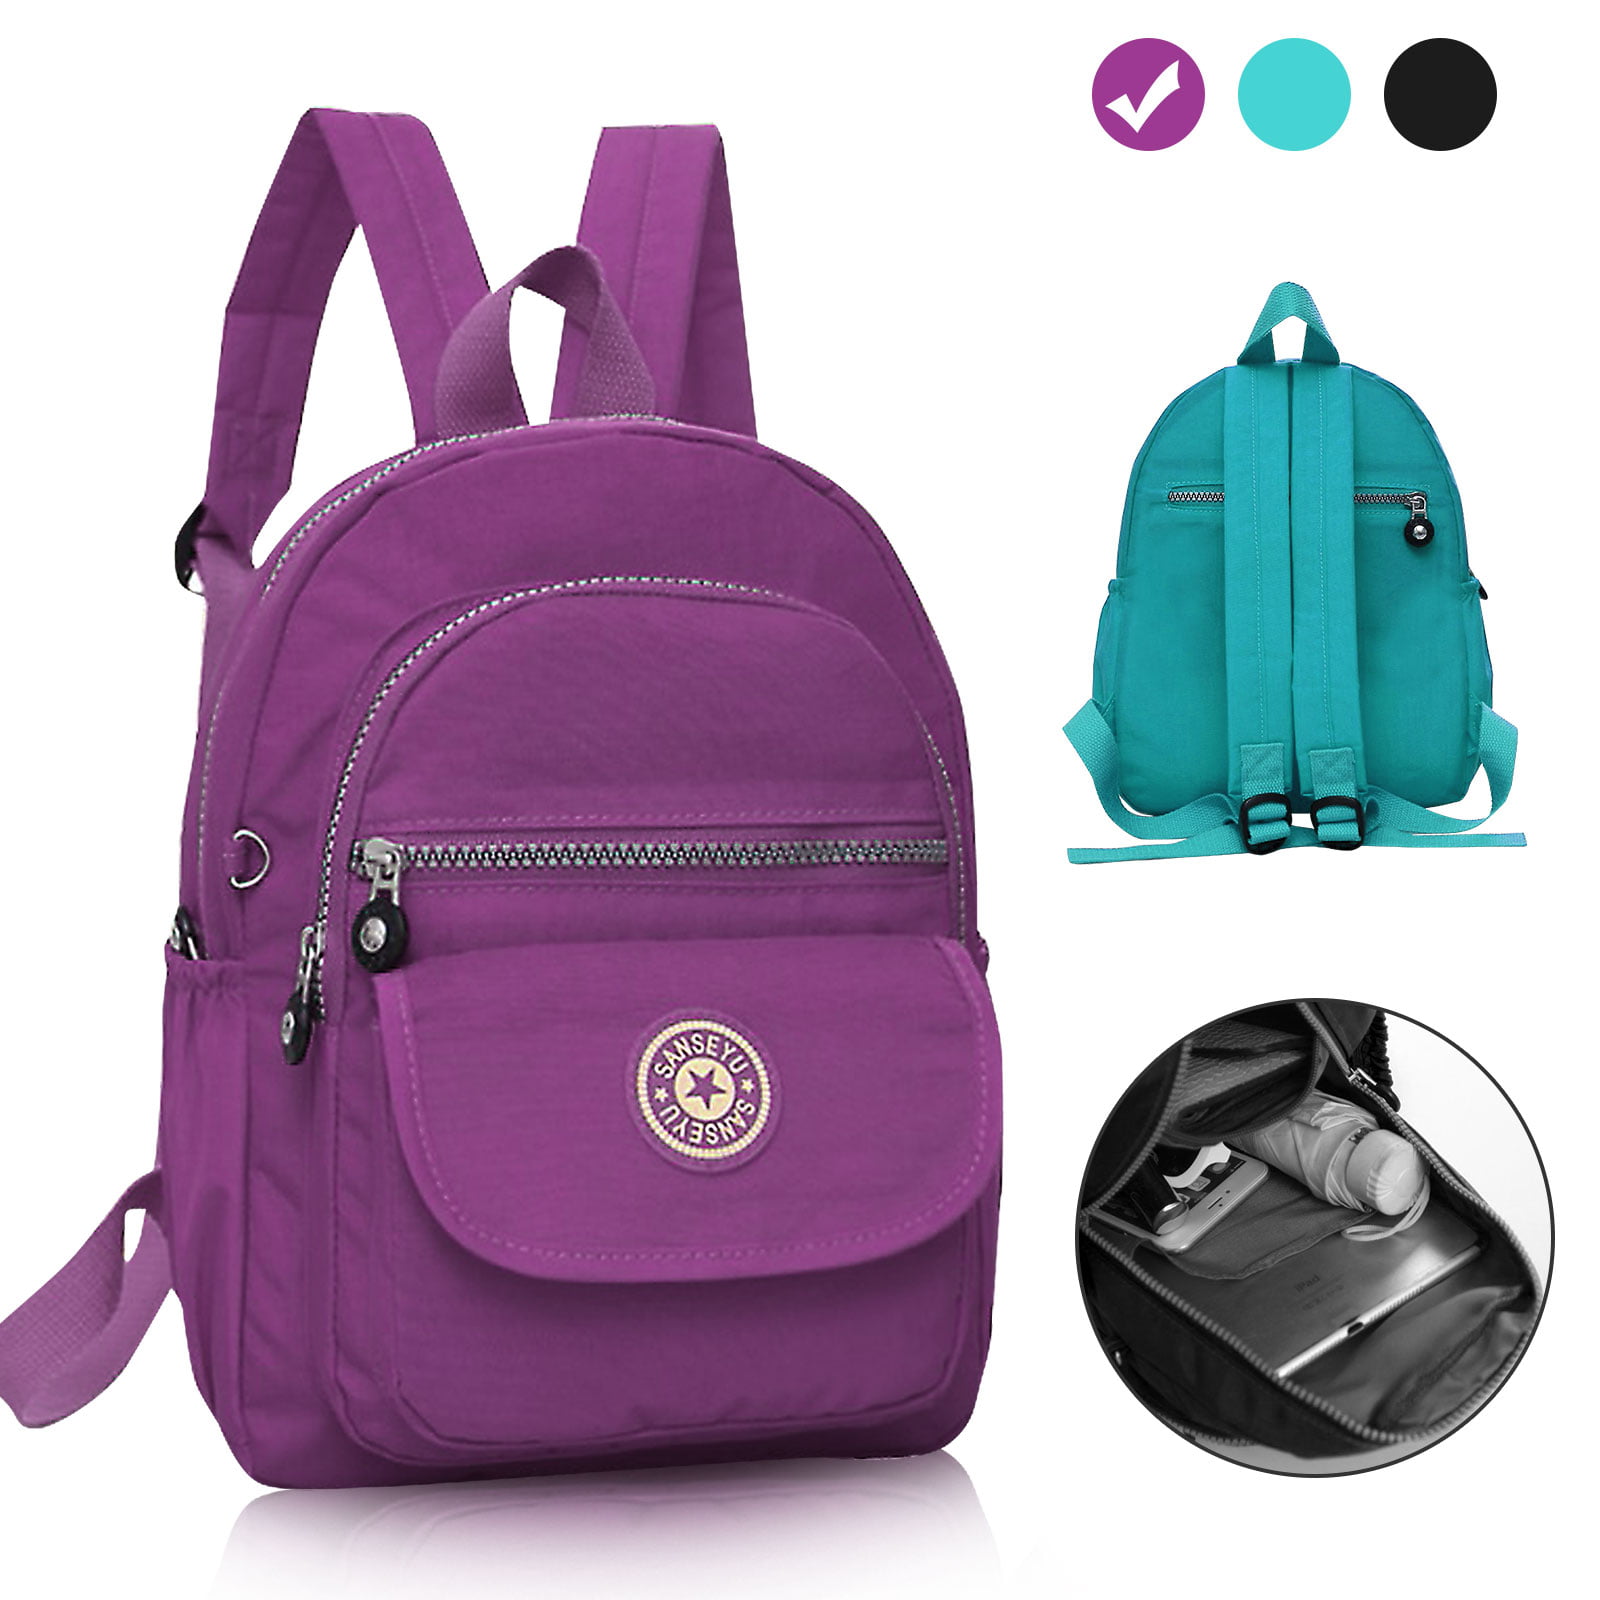 TSV - TSV Nylon Small Backpack for Women, Waterproof Mini Backpacks Light Outdoor Travel ...